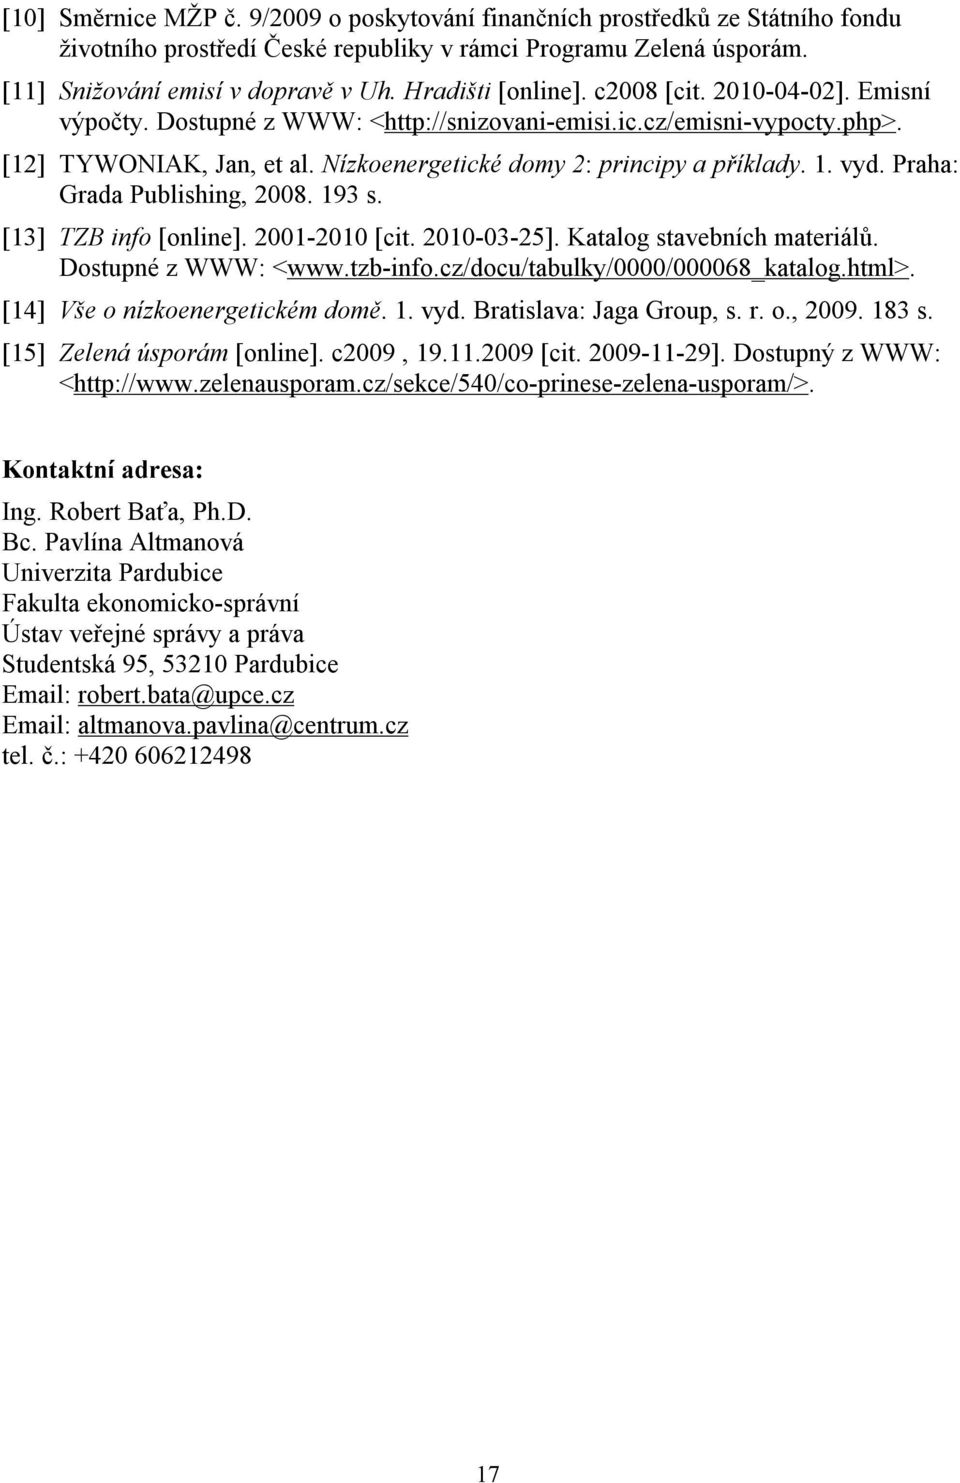 1. vyd. Praha: Grada Publishing, 2008. 193 s. [13] TZB info [online]. 2001-2010 [cit. 2010-03-25]. Katalog stavebních materiálů. Dostupné z WWW: <www.tzb-info.cz/docu/tabulky/0000/000068_katalog.